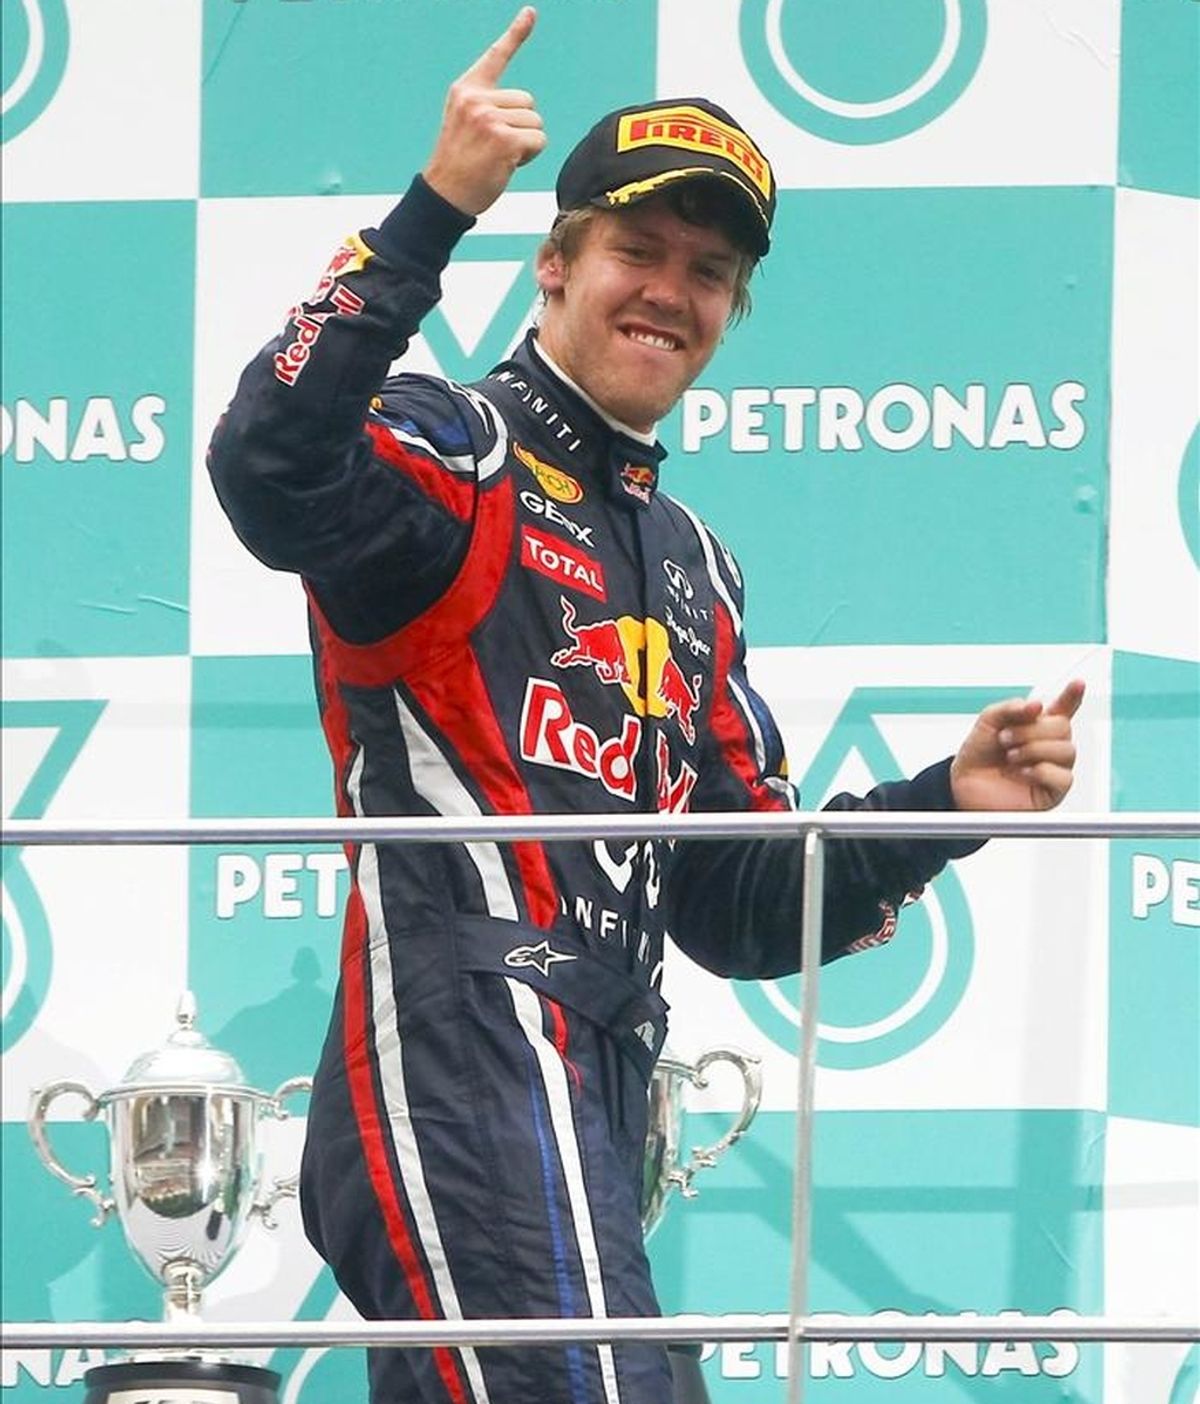 El piloto alemán Sebastian Vettel (Red Bull) celebra tras ganar el Gran Premio de Malasia de Fórmula Uno, segunda prueba del Mundial, que se disputa hoy, domingo 10 de abril de 2011 en el circuito de Sepang, en las afueras de Kuala Lumpur (Malasia). EFE